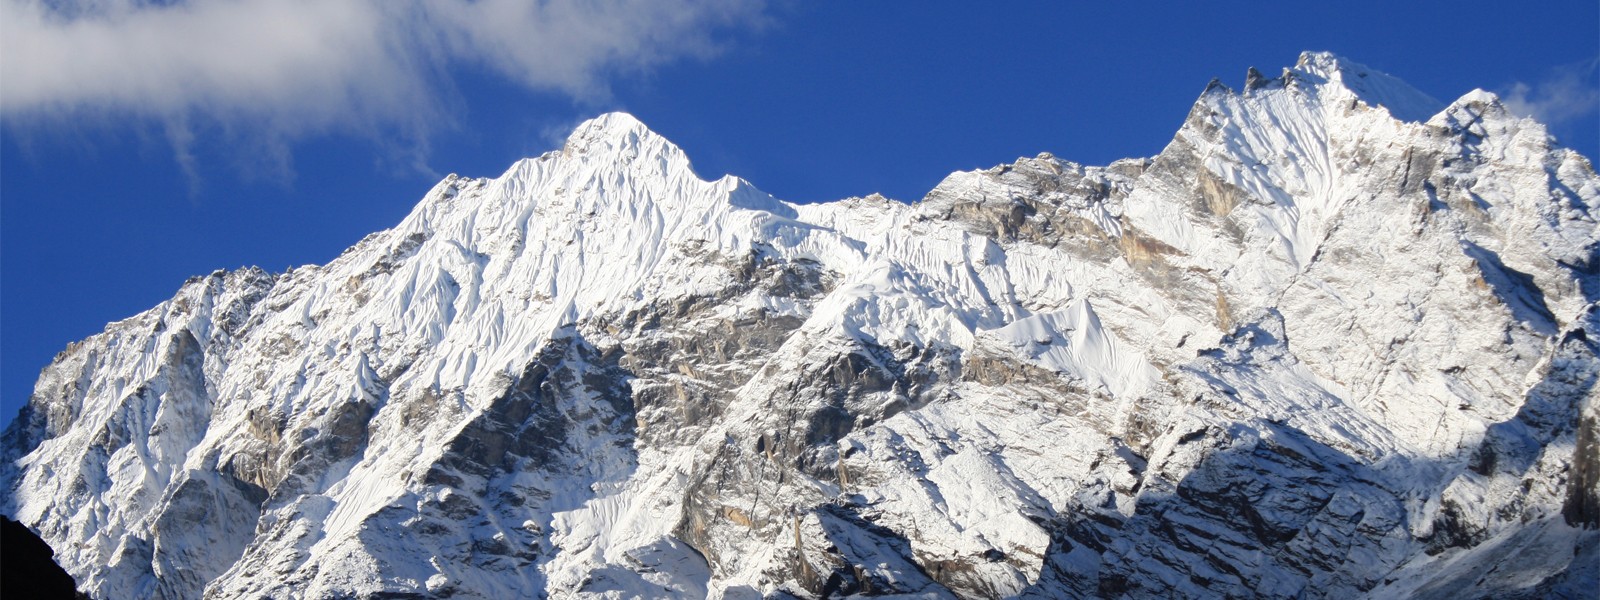 Nepal Paldor Peak Climbing